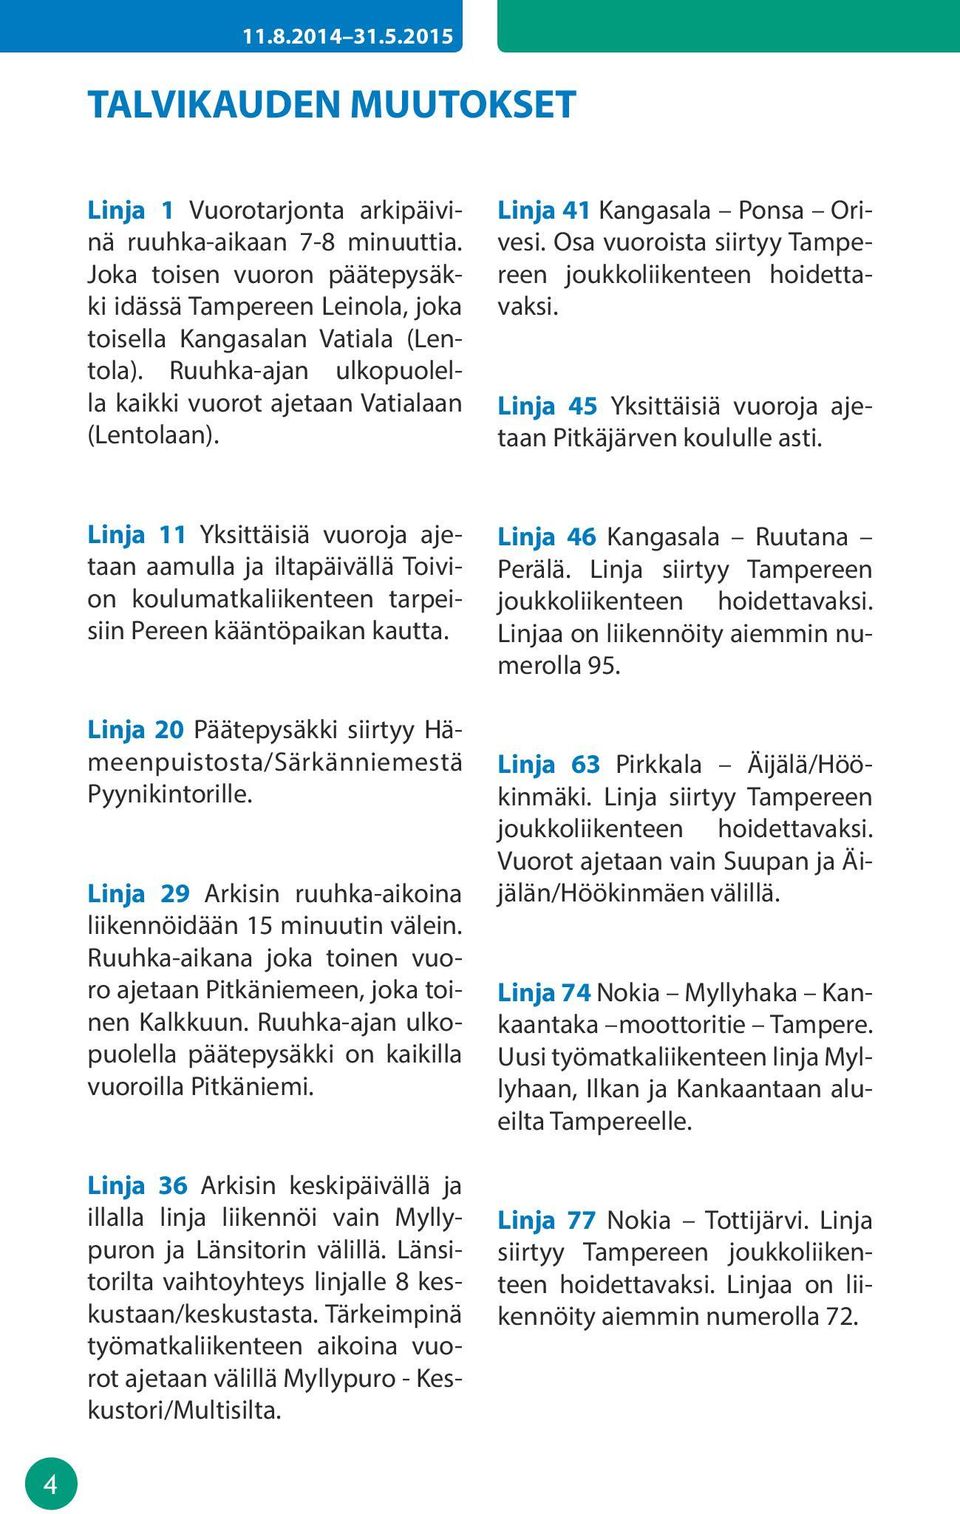 inja 45 Yksittäisiä vuoroja ajetaan Pitkäjärven koululle asti. inja 11 Yksittäisiä vuoroja ajetaan aamulla ja iltapäivällä Toivion koulumatkaliikenteen tarpeisiin Pereen kääntöpaikan kautta.